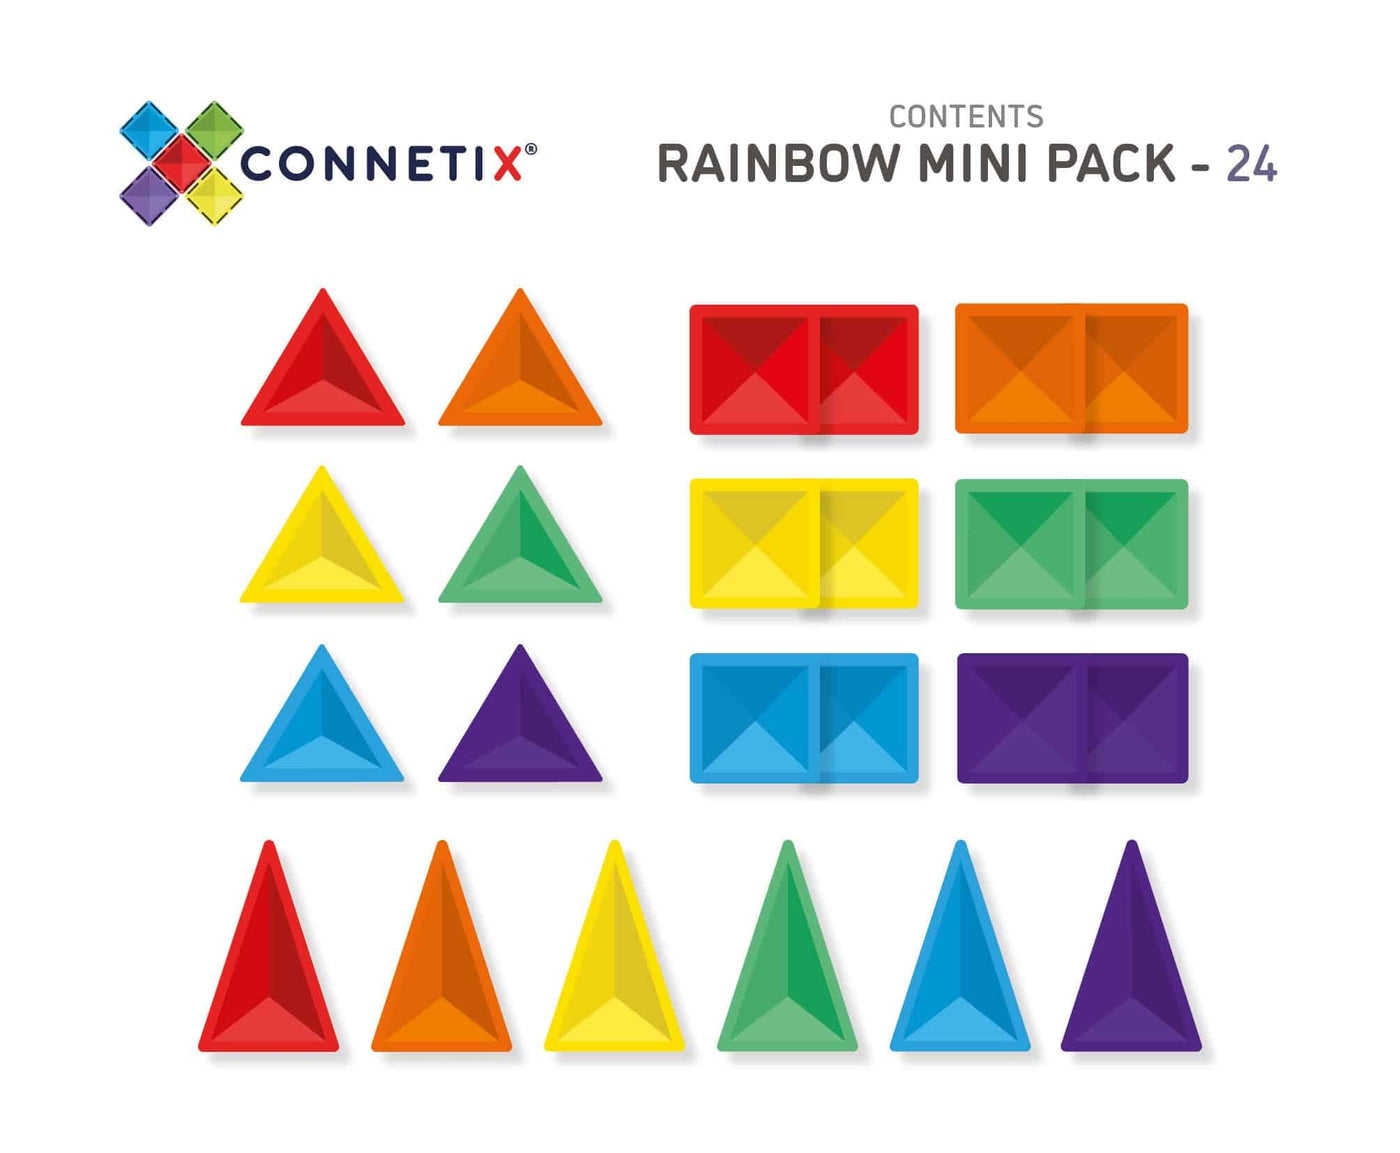 Connetix Rainbow Mini Pack 14 Pc contents